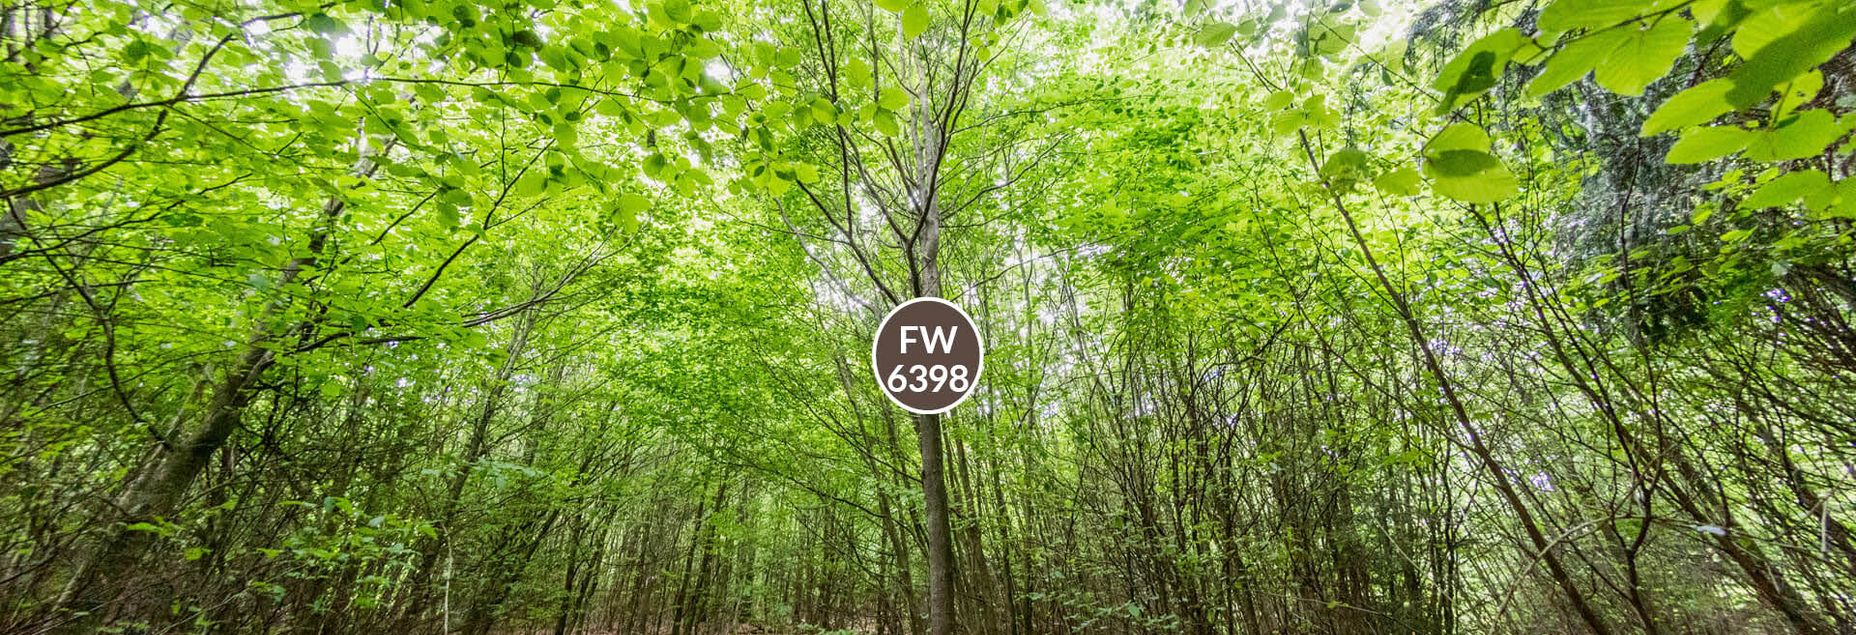 Baum FW 6398 - Fisheyeperspektive